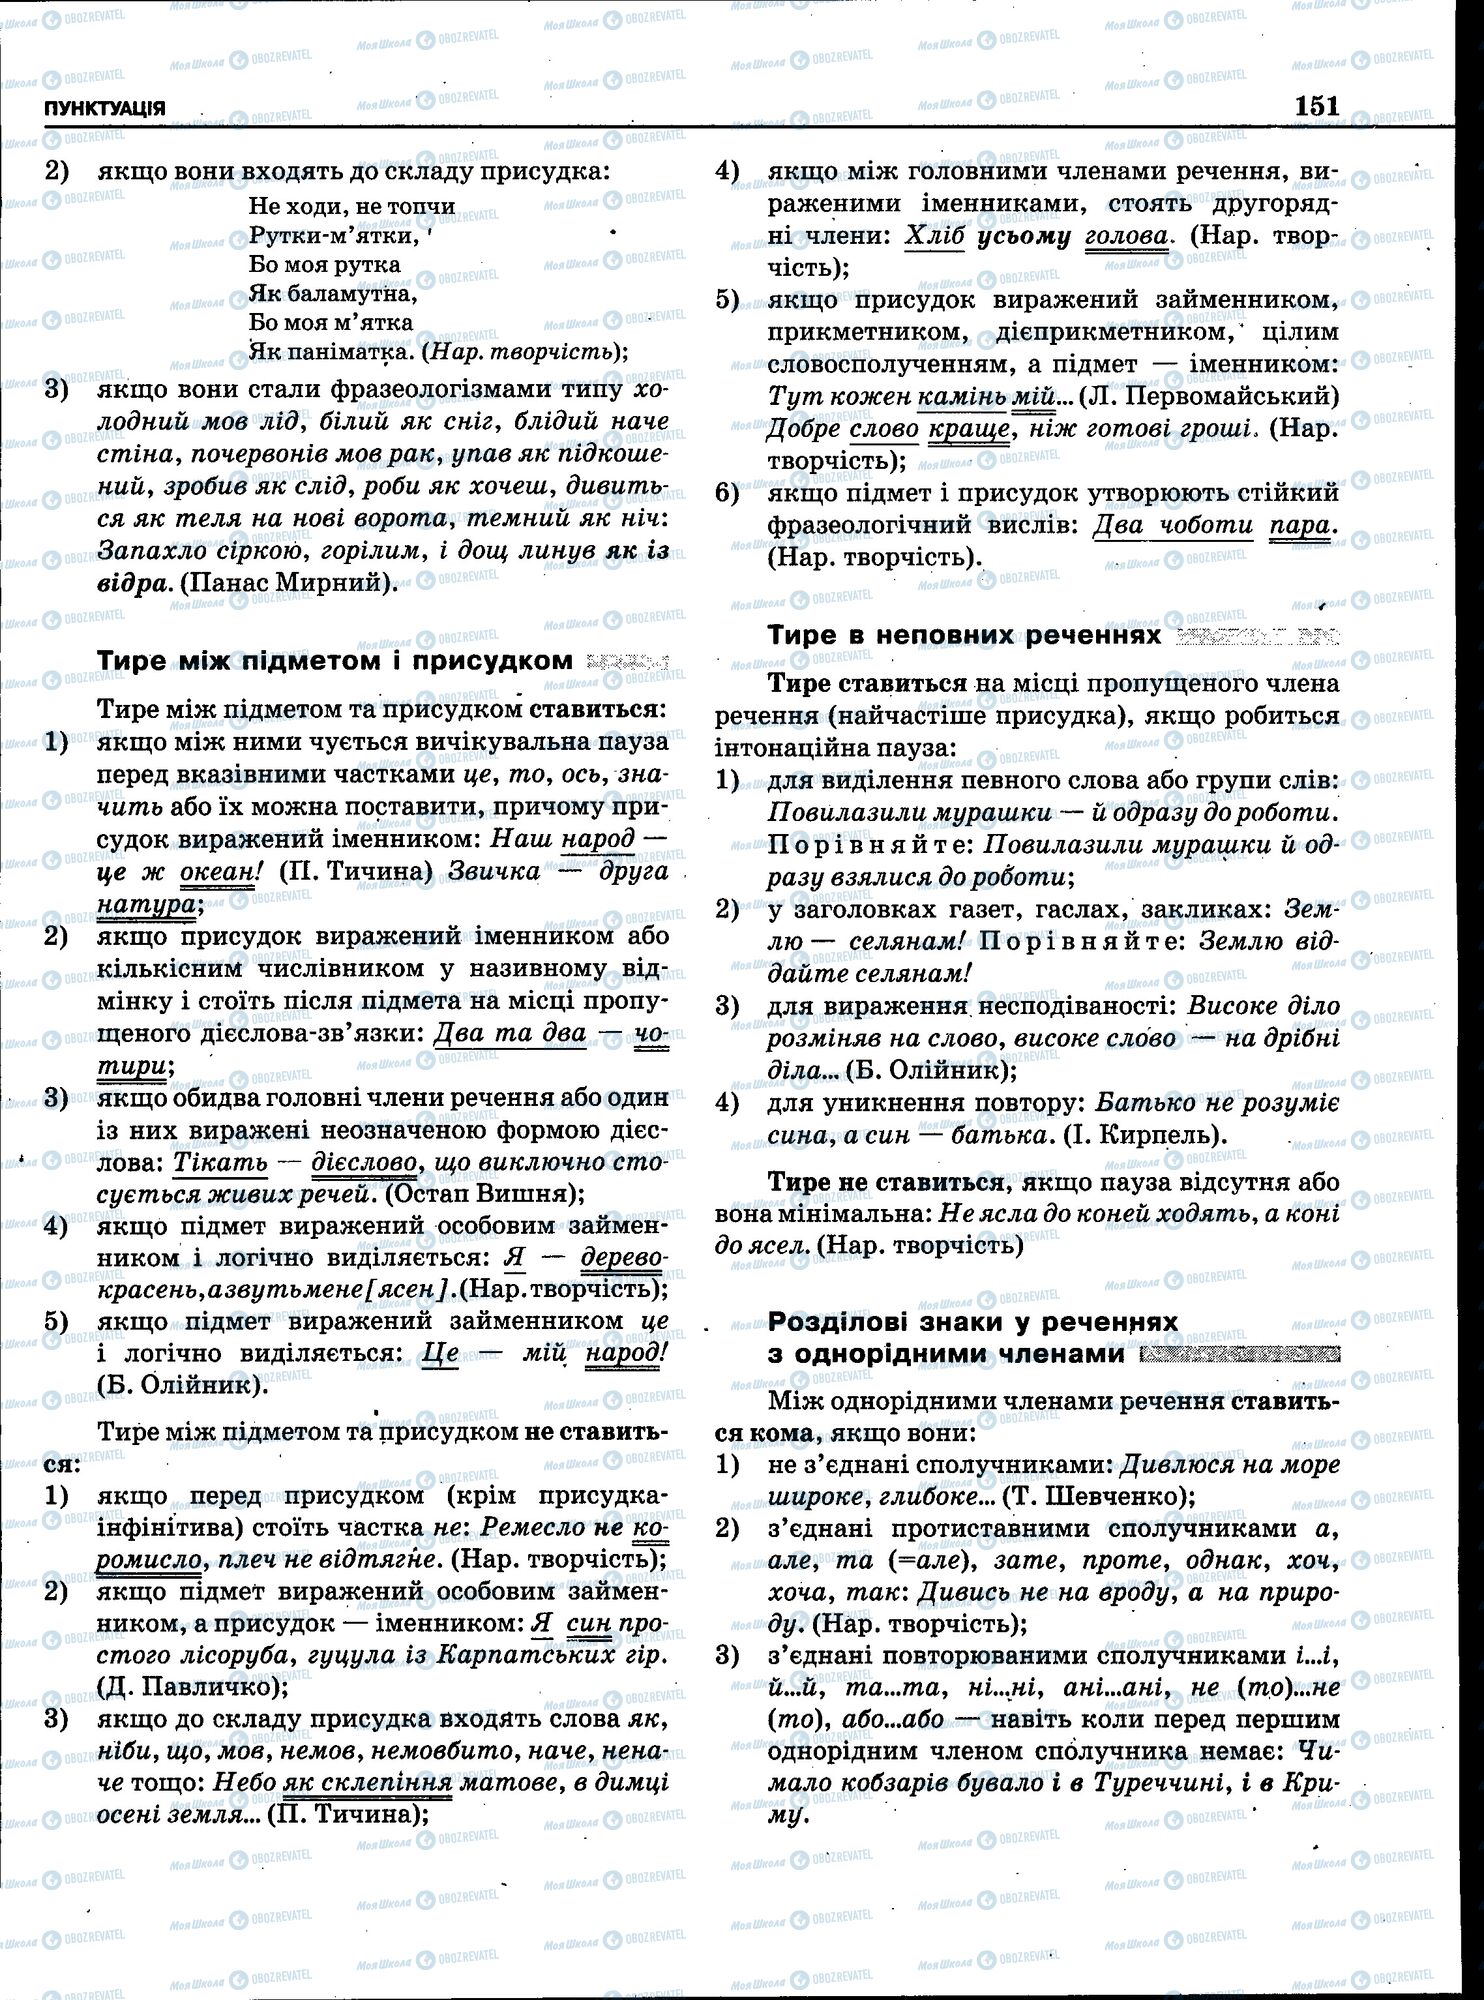 ЗНО Укр мова 11 класс страница 149